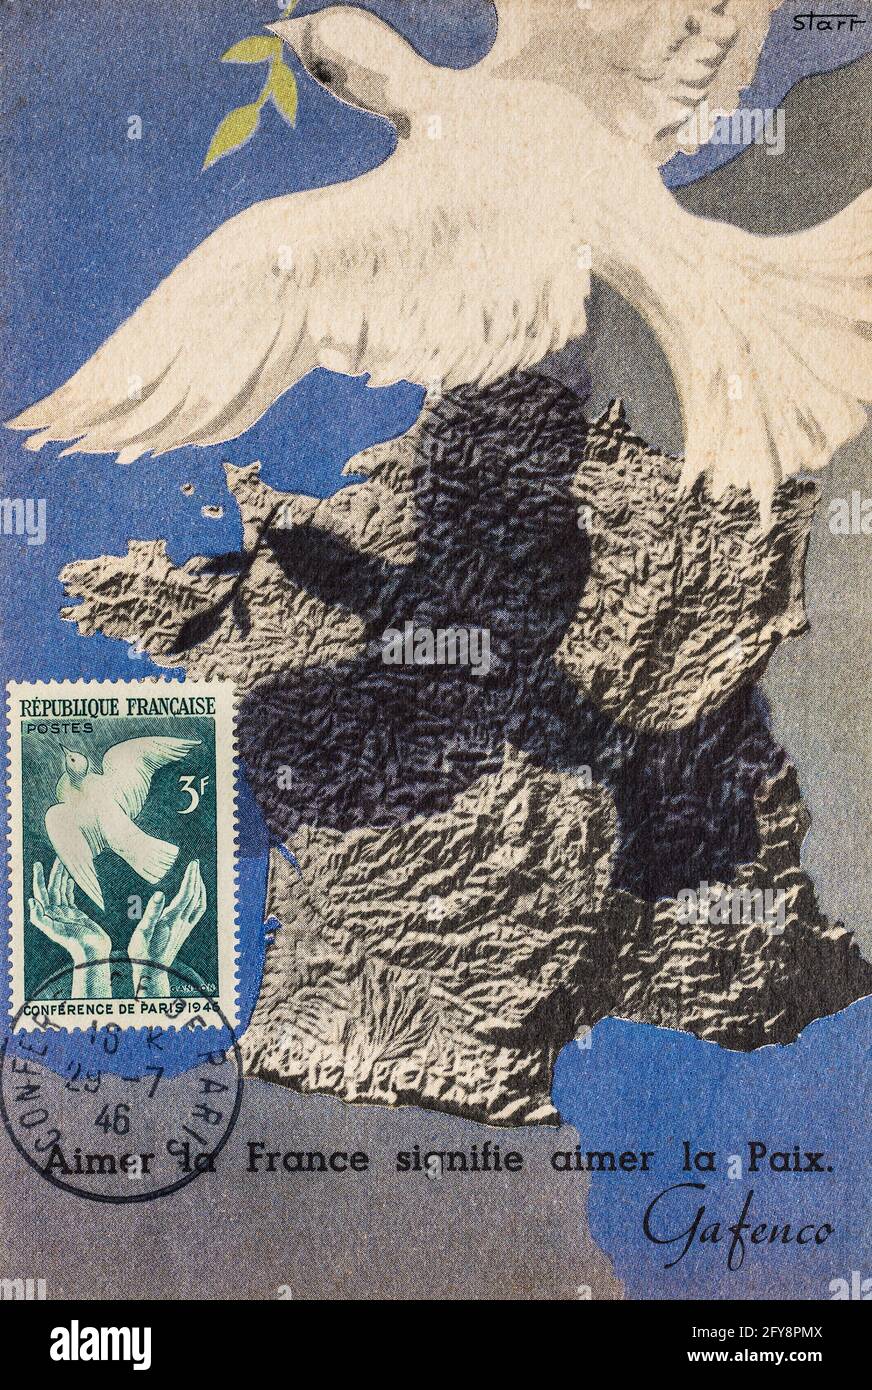 „Maximum Card“-Postkarte mit weißer Taube, kartierter Darstellung von Frankreich und Briefmarke zur Feier der Pariser Friedenskonferenz 1946. Stockfoto